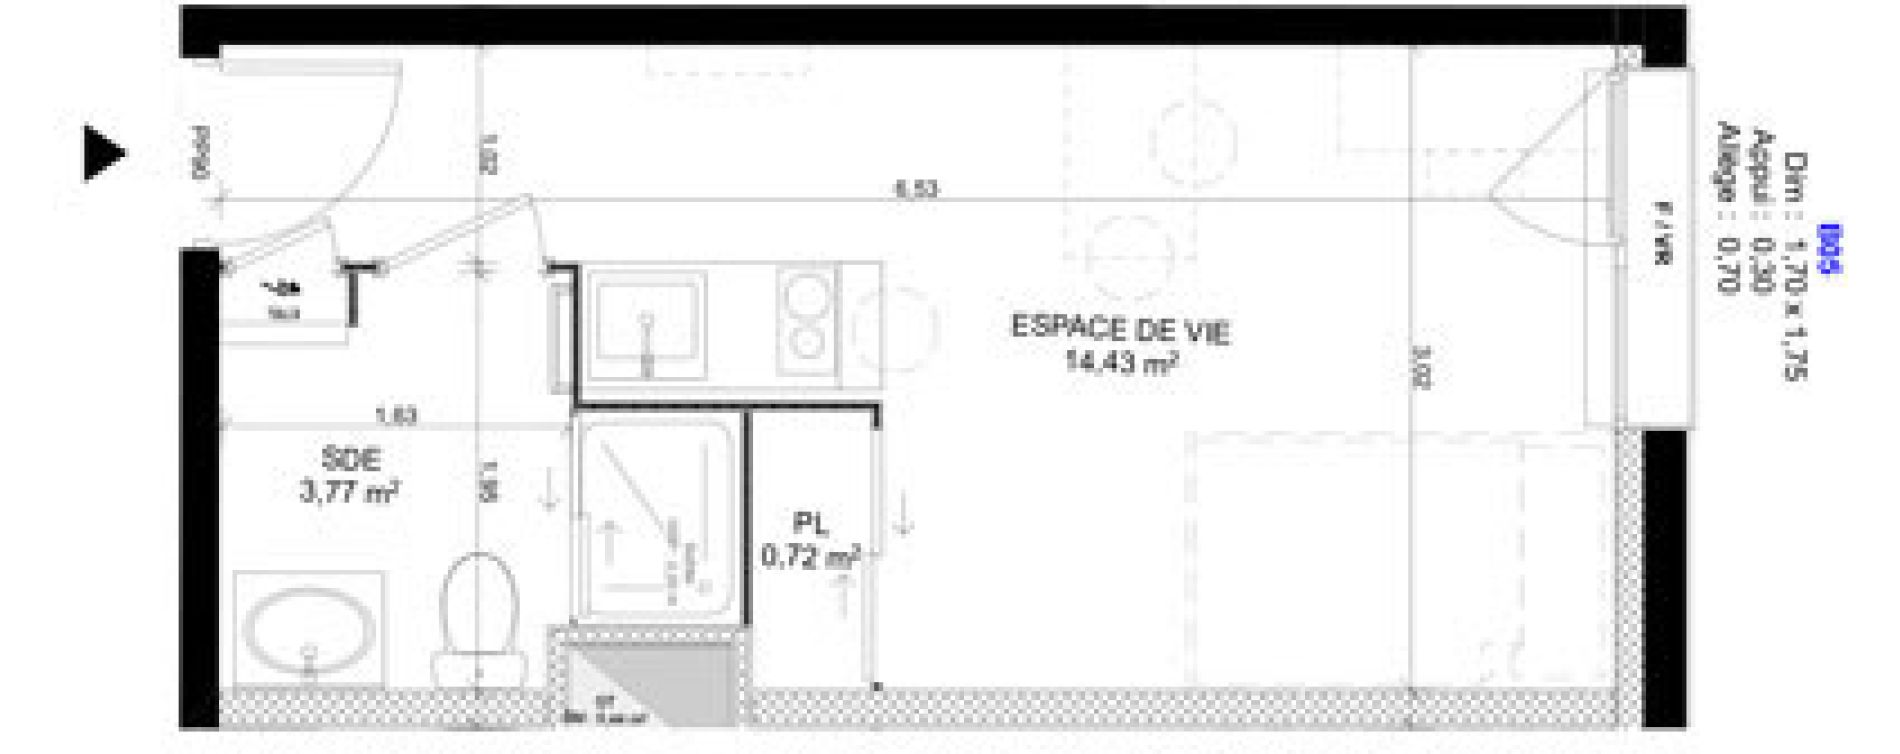 Appartement T1 meubl&eacute; de 18,92 m2 au Havre Sainte marie - saint leon